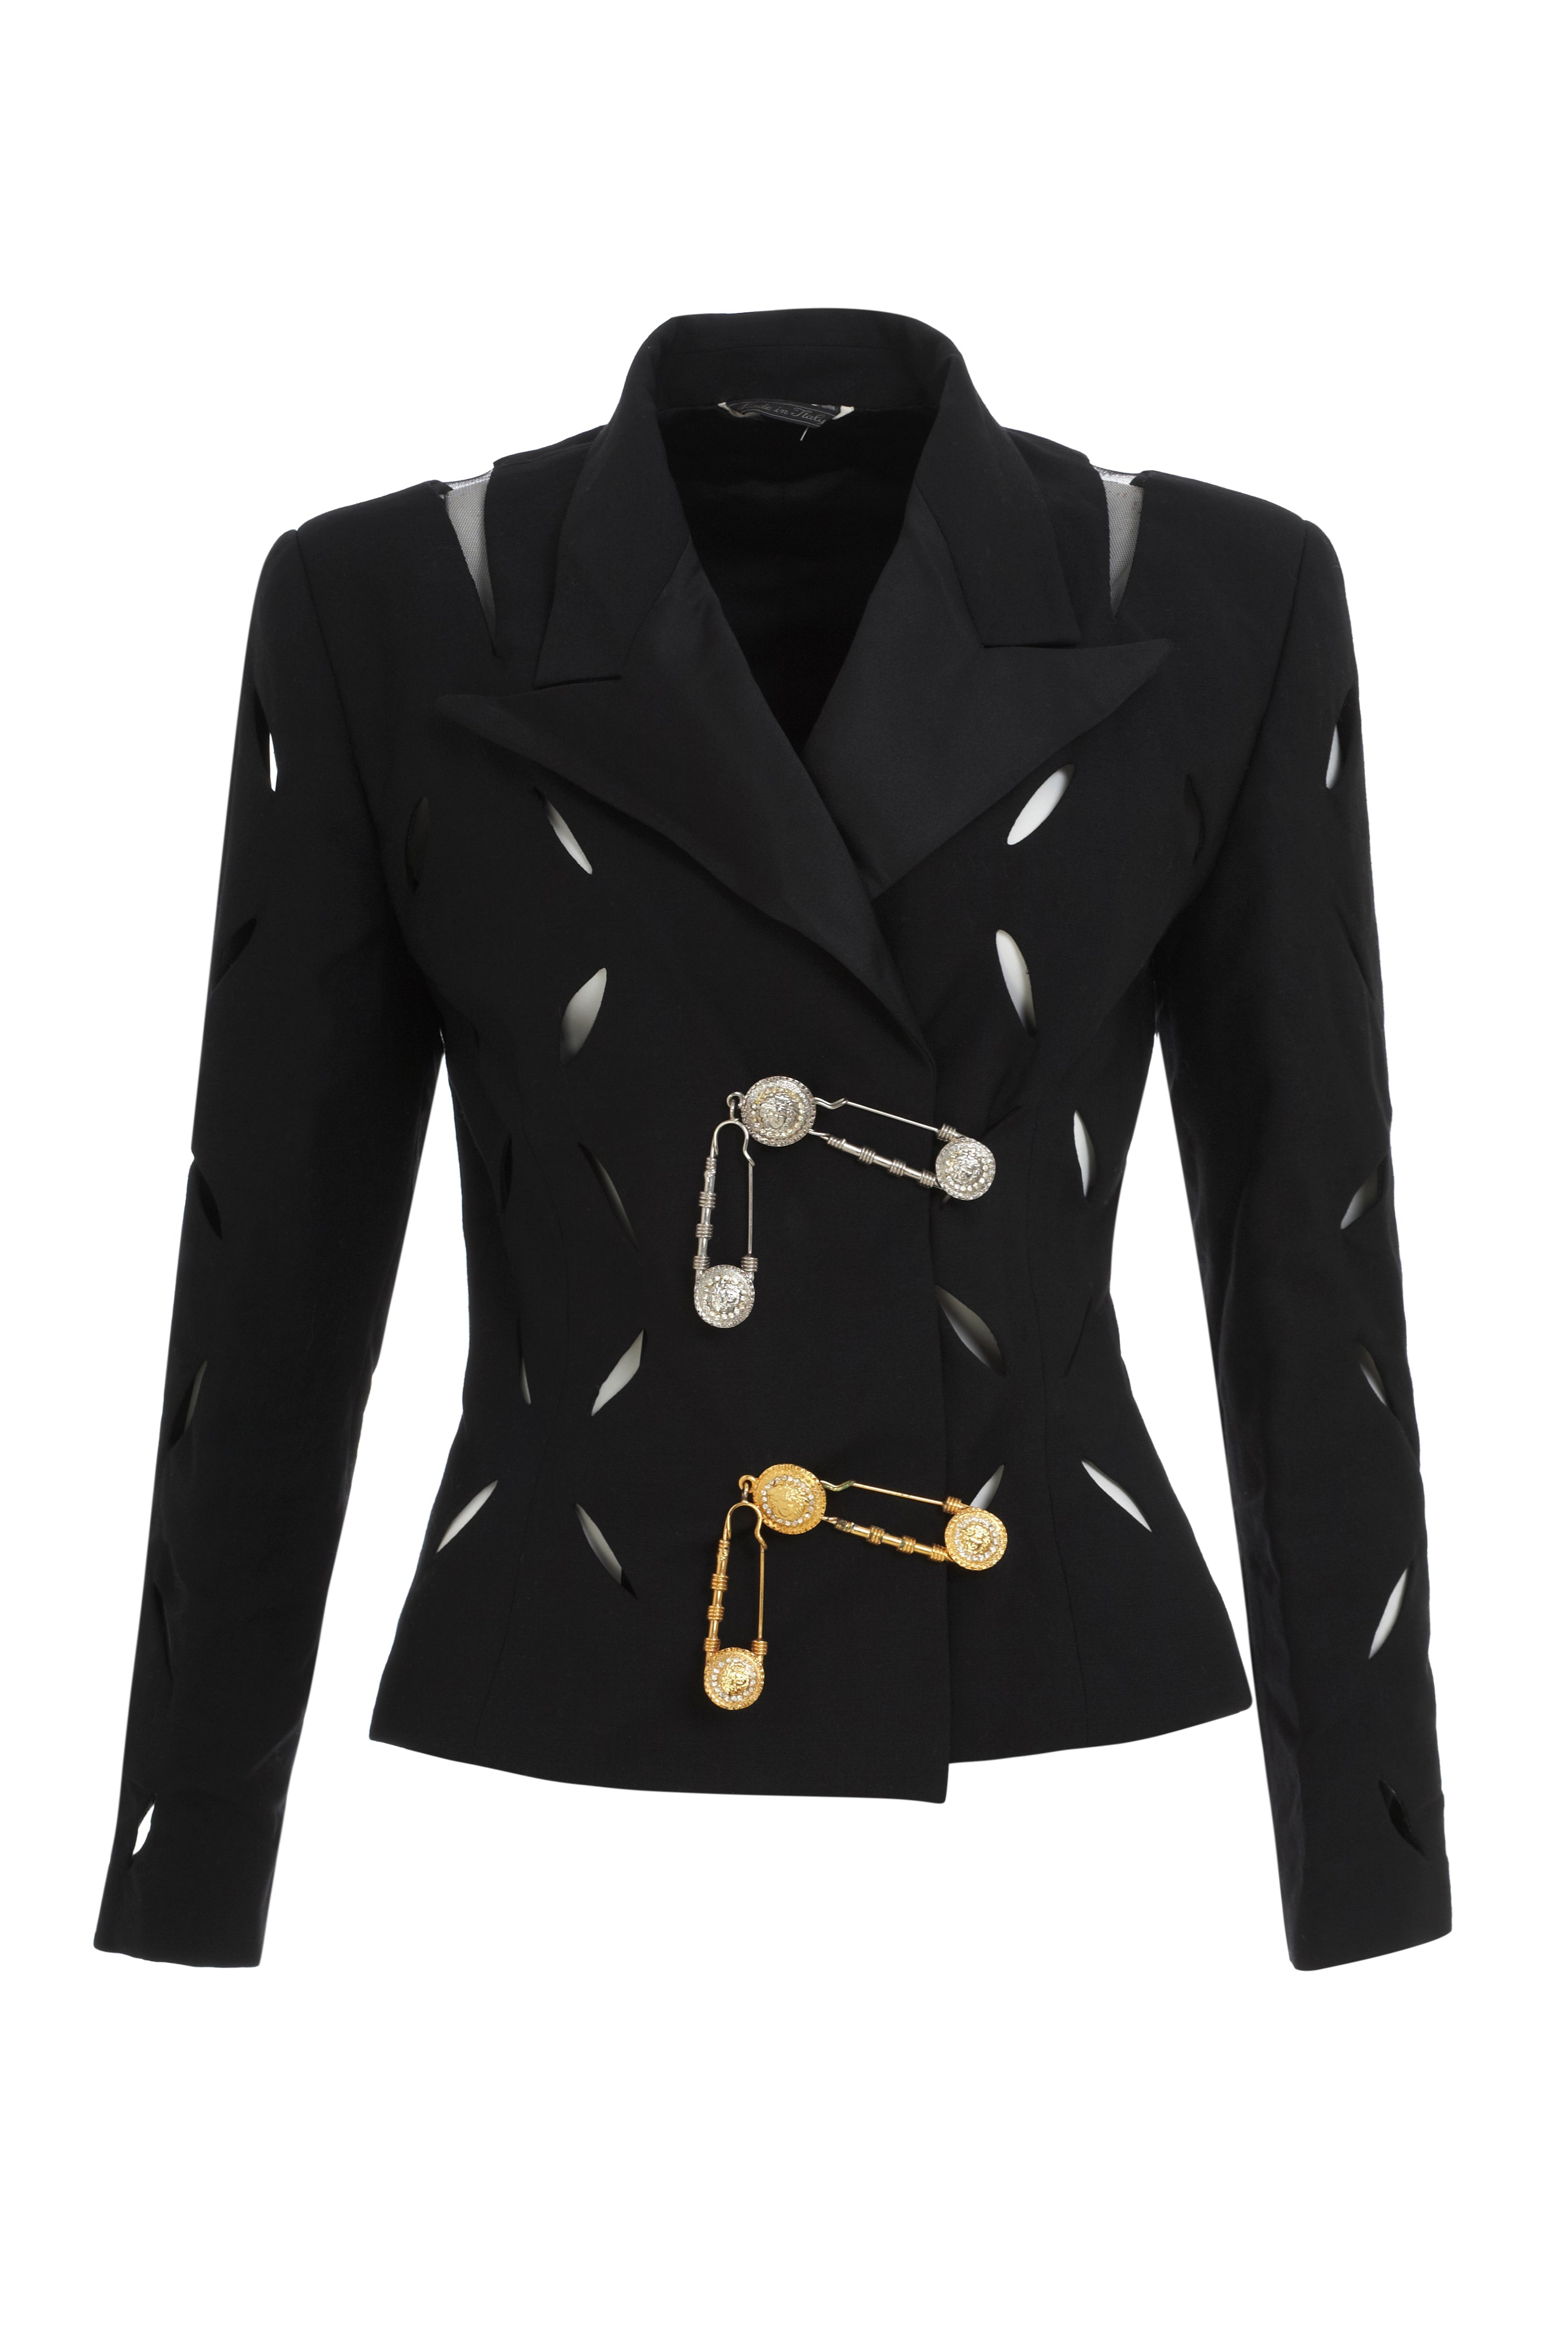 versace black coat